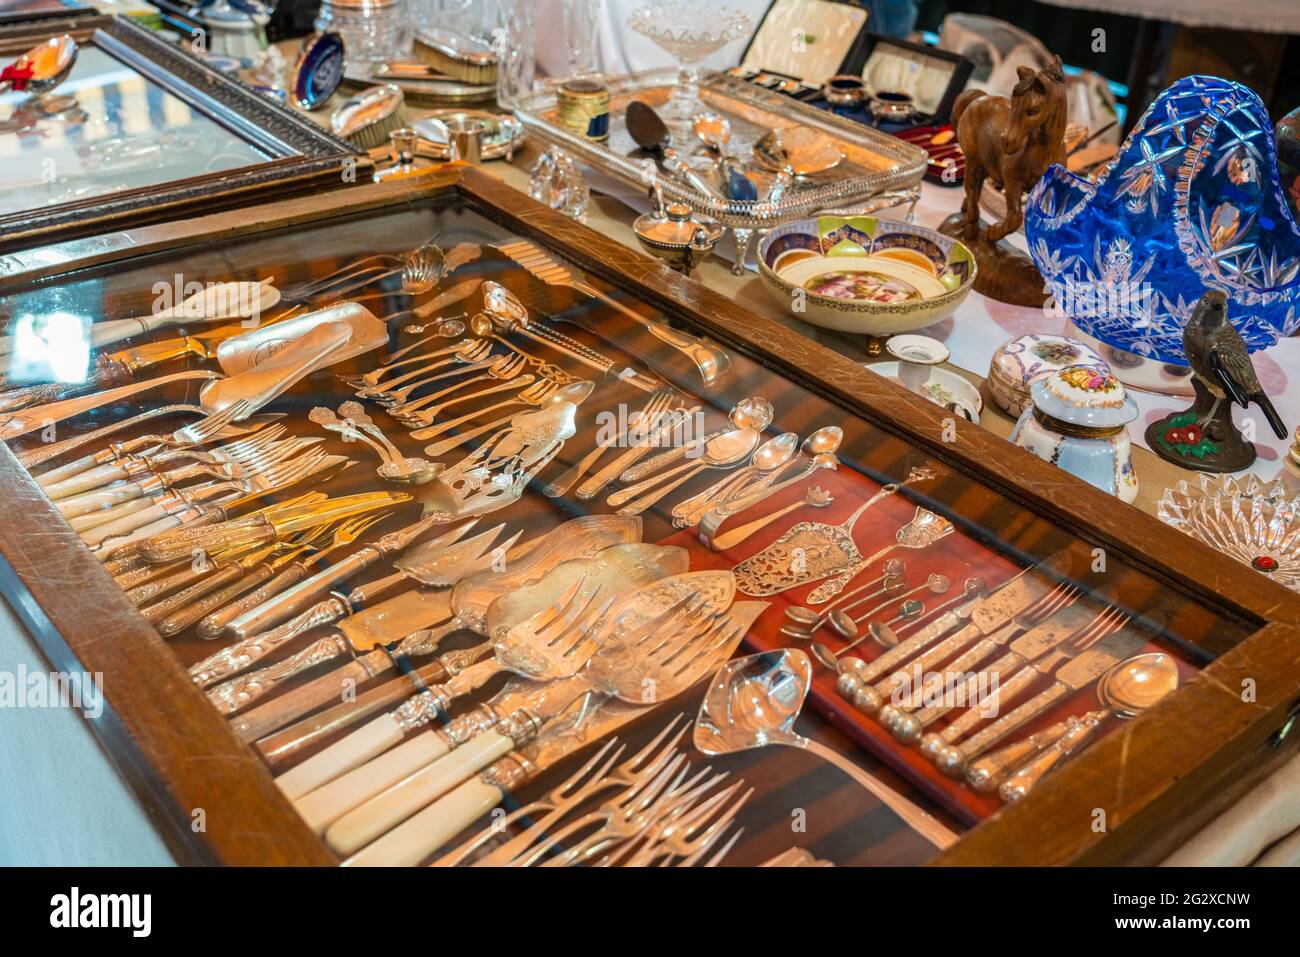 BARCELONA, SPANIEN - 10. JUNI 2019: Antike Objekte, Münzen, Juwelen, Geschirr und andere Utensilien auf einem Flohmarkt Stockfoto